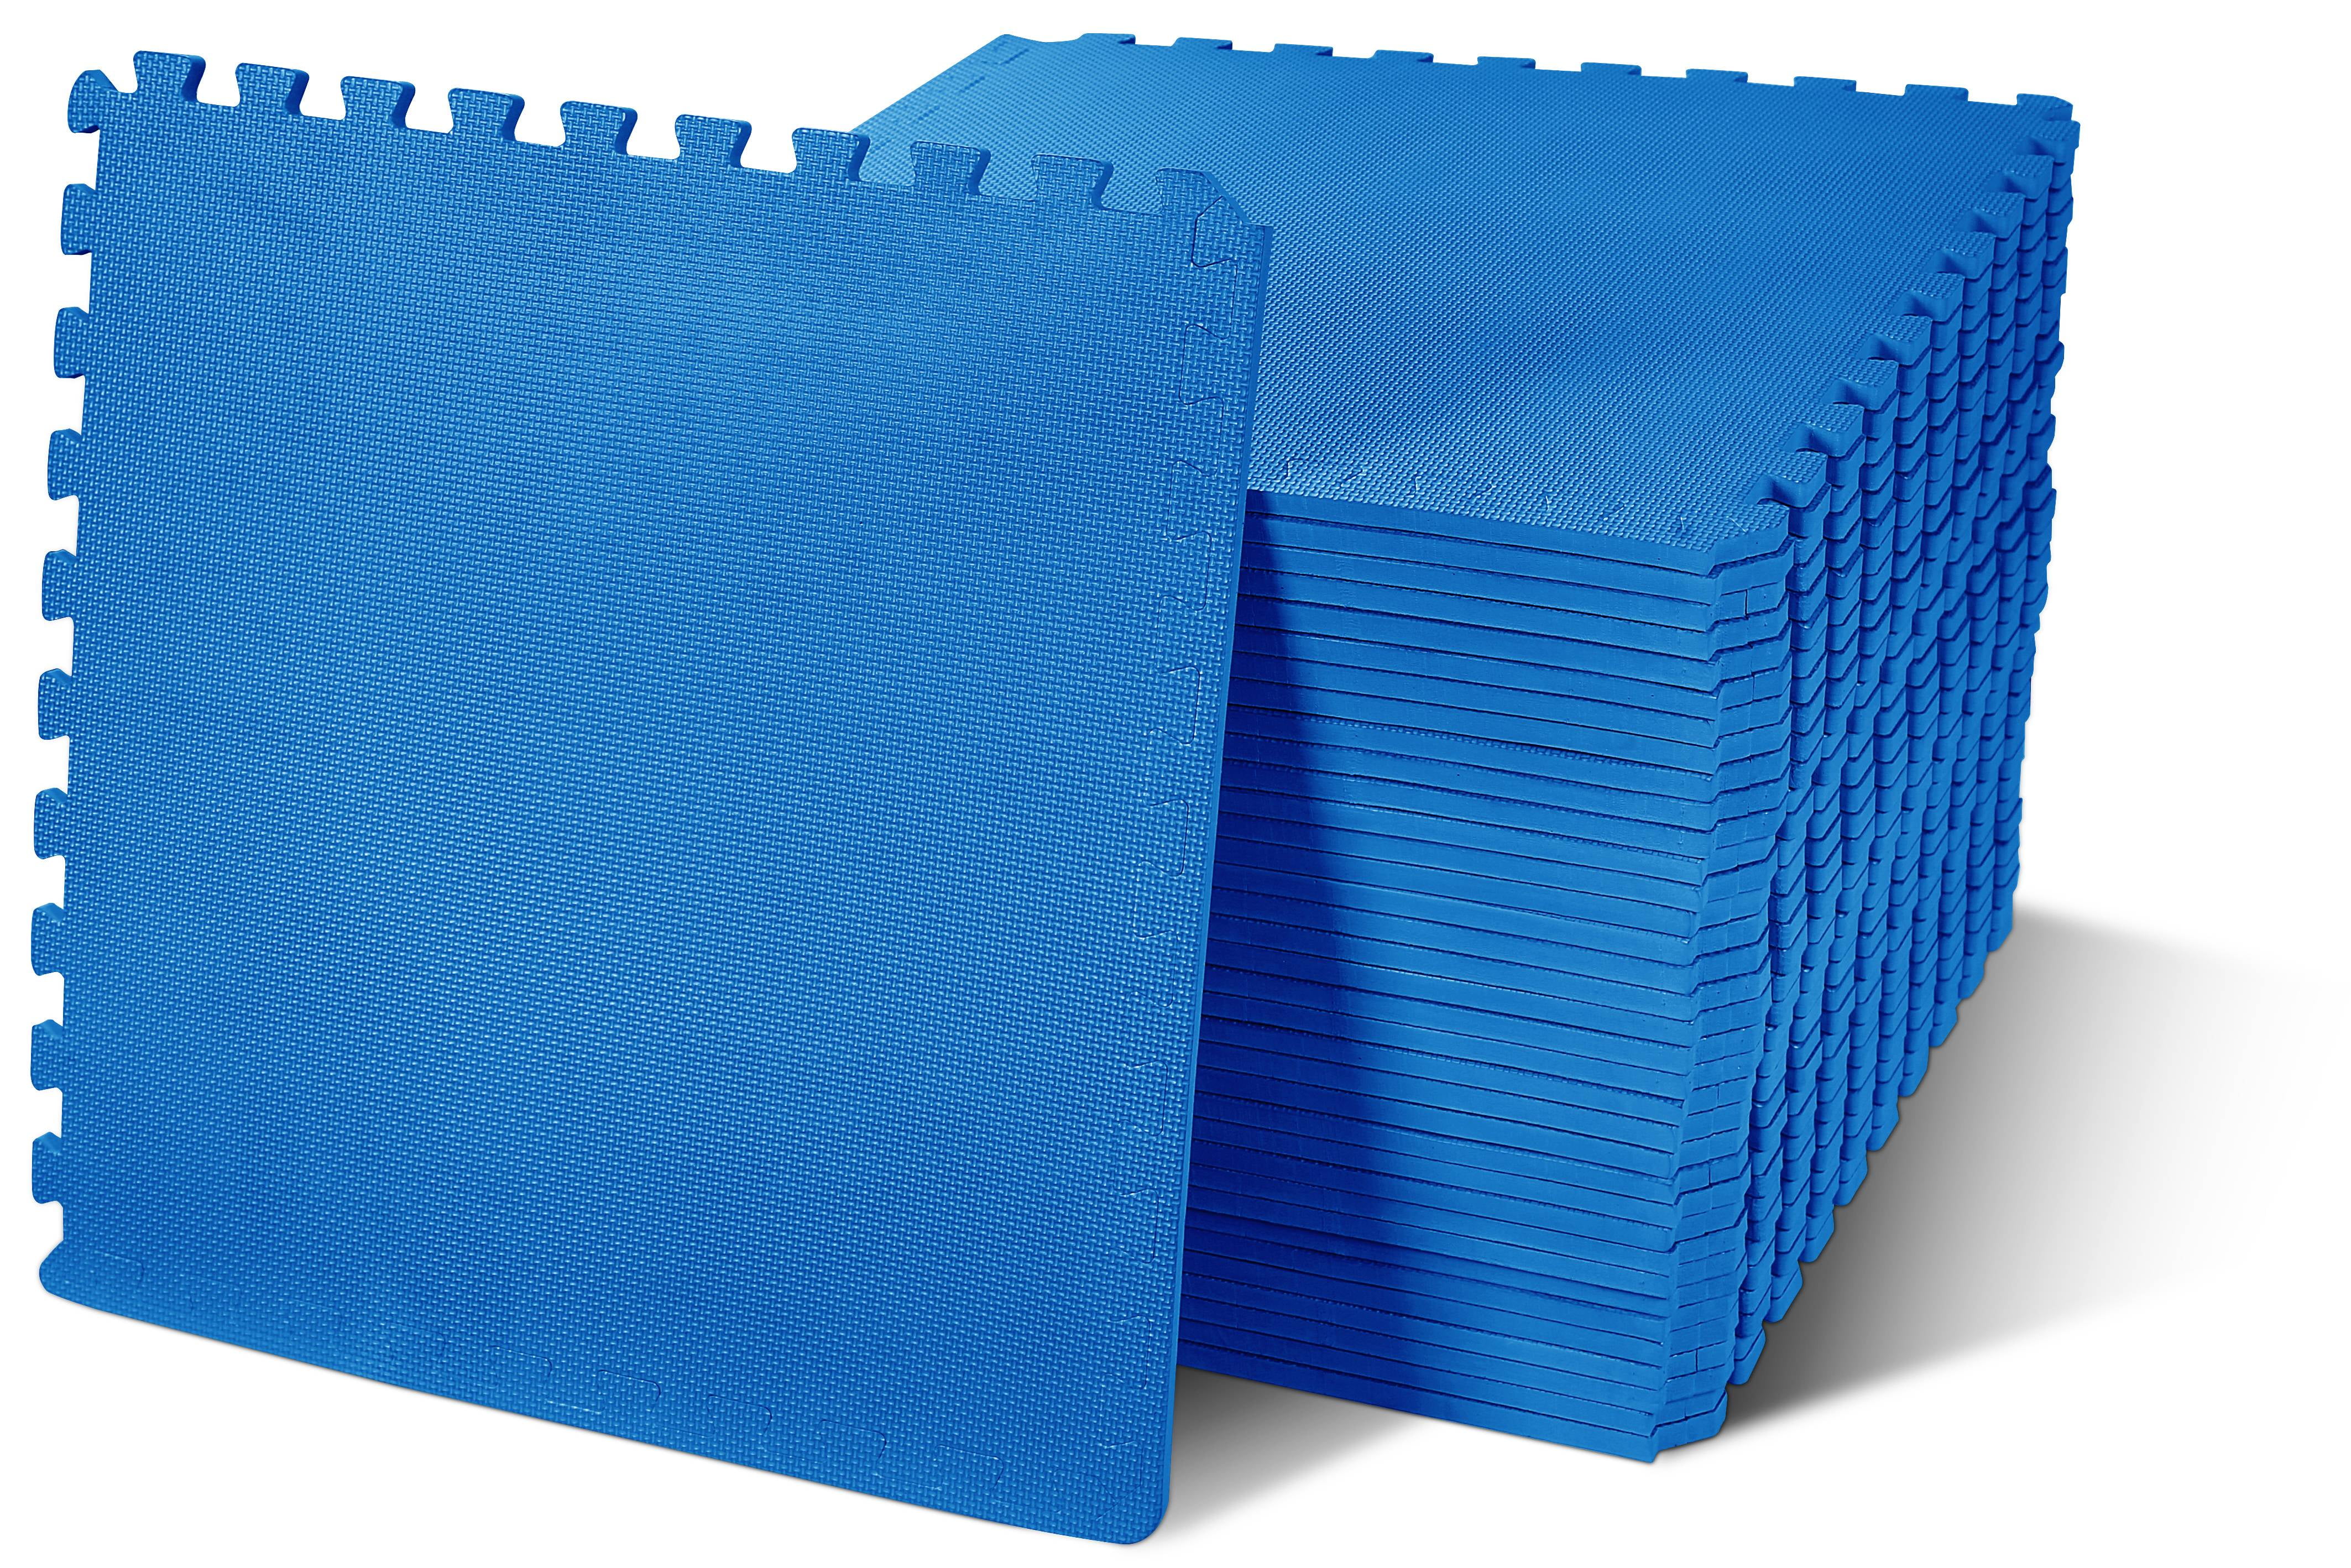 144 sqft blue interlocking foam floor puzzle tiles mats puzzle mat flooring 